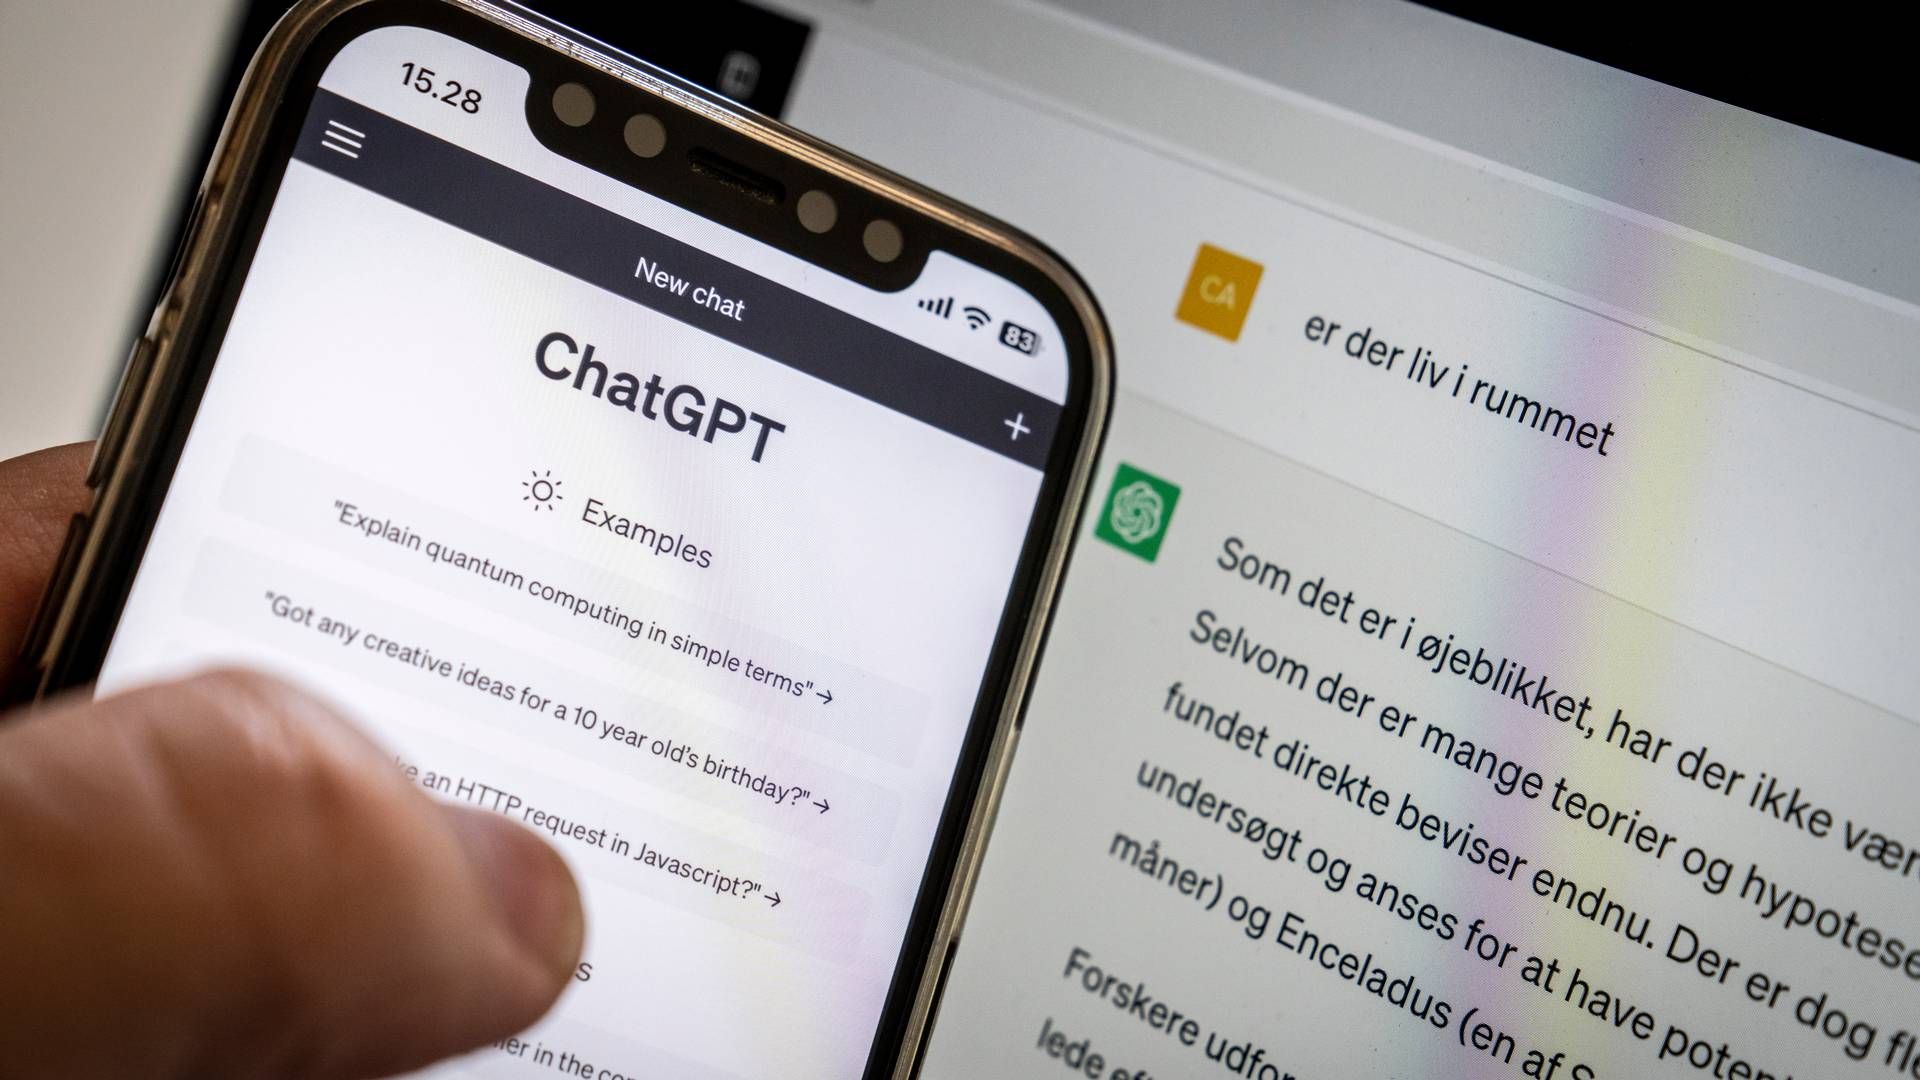 Den mest kendte chatbot er ChatGPT, som har over 100 millioner aktive brugere. | Foto: Mads Claus Rasmussen